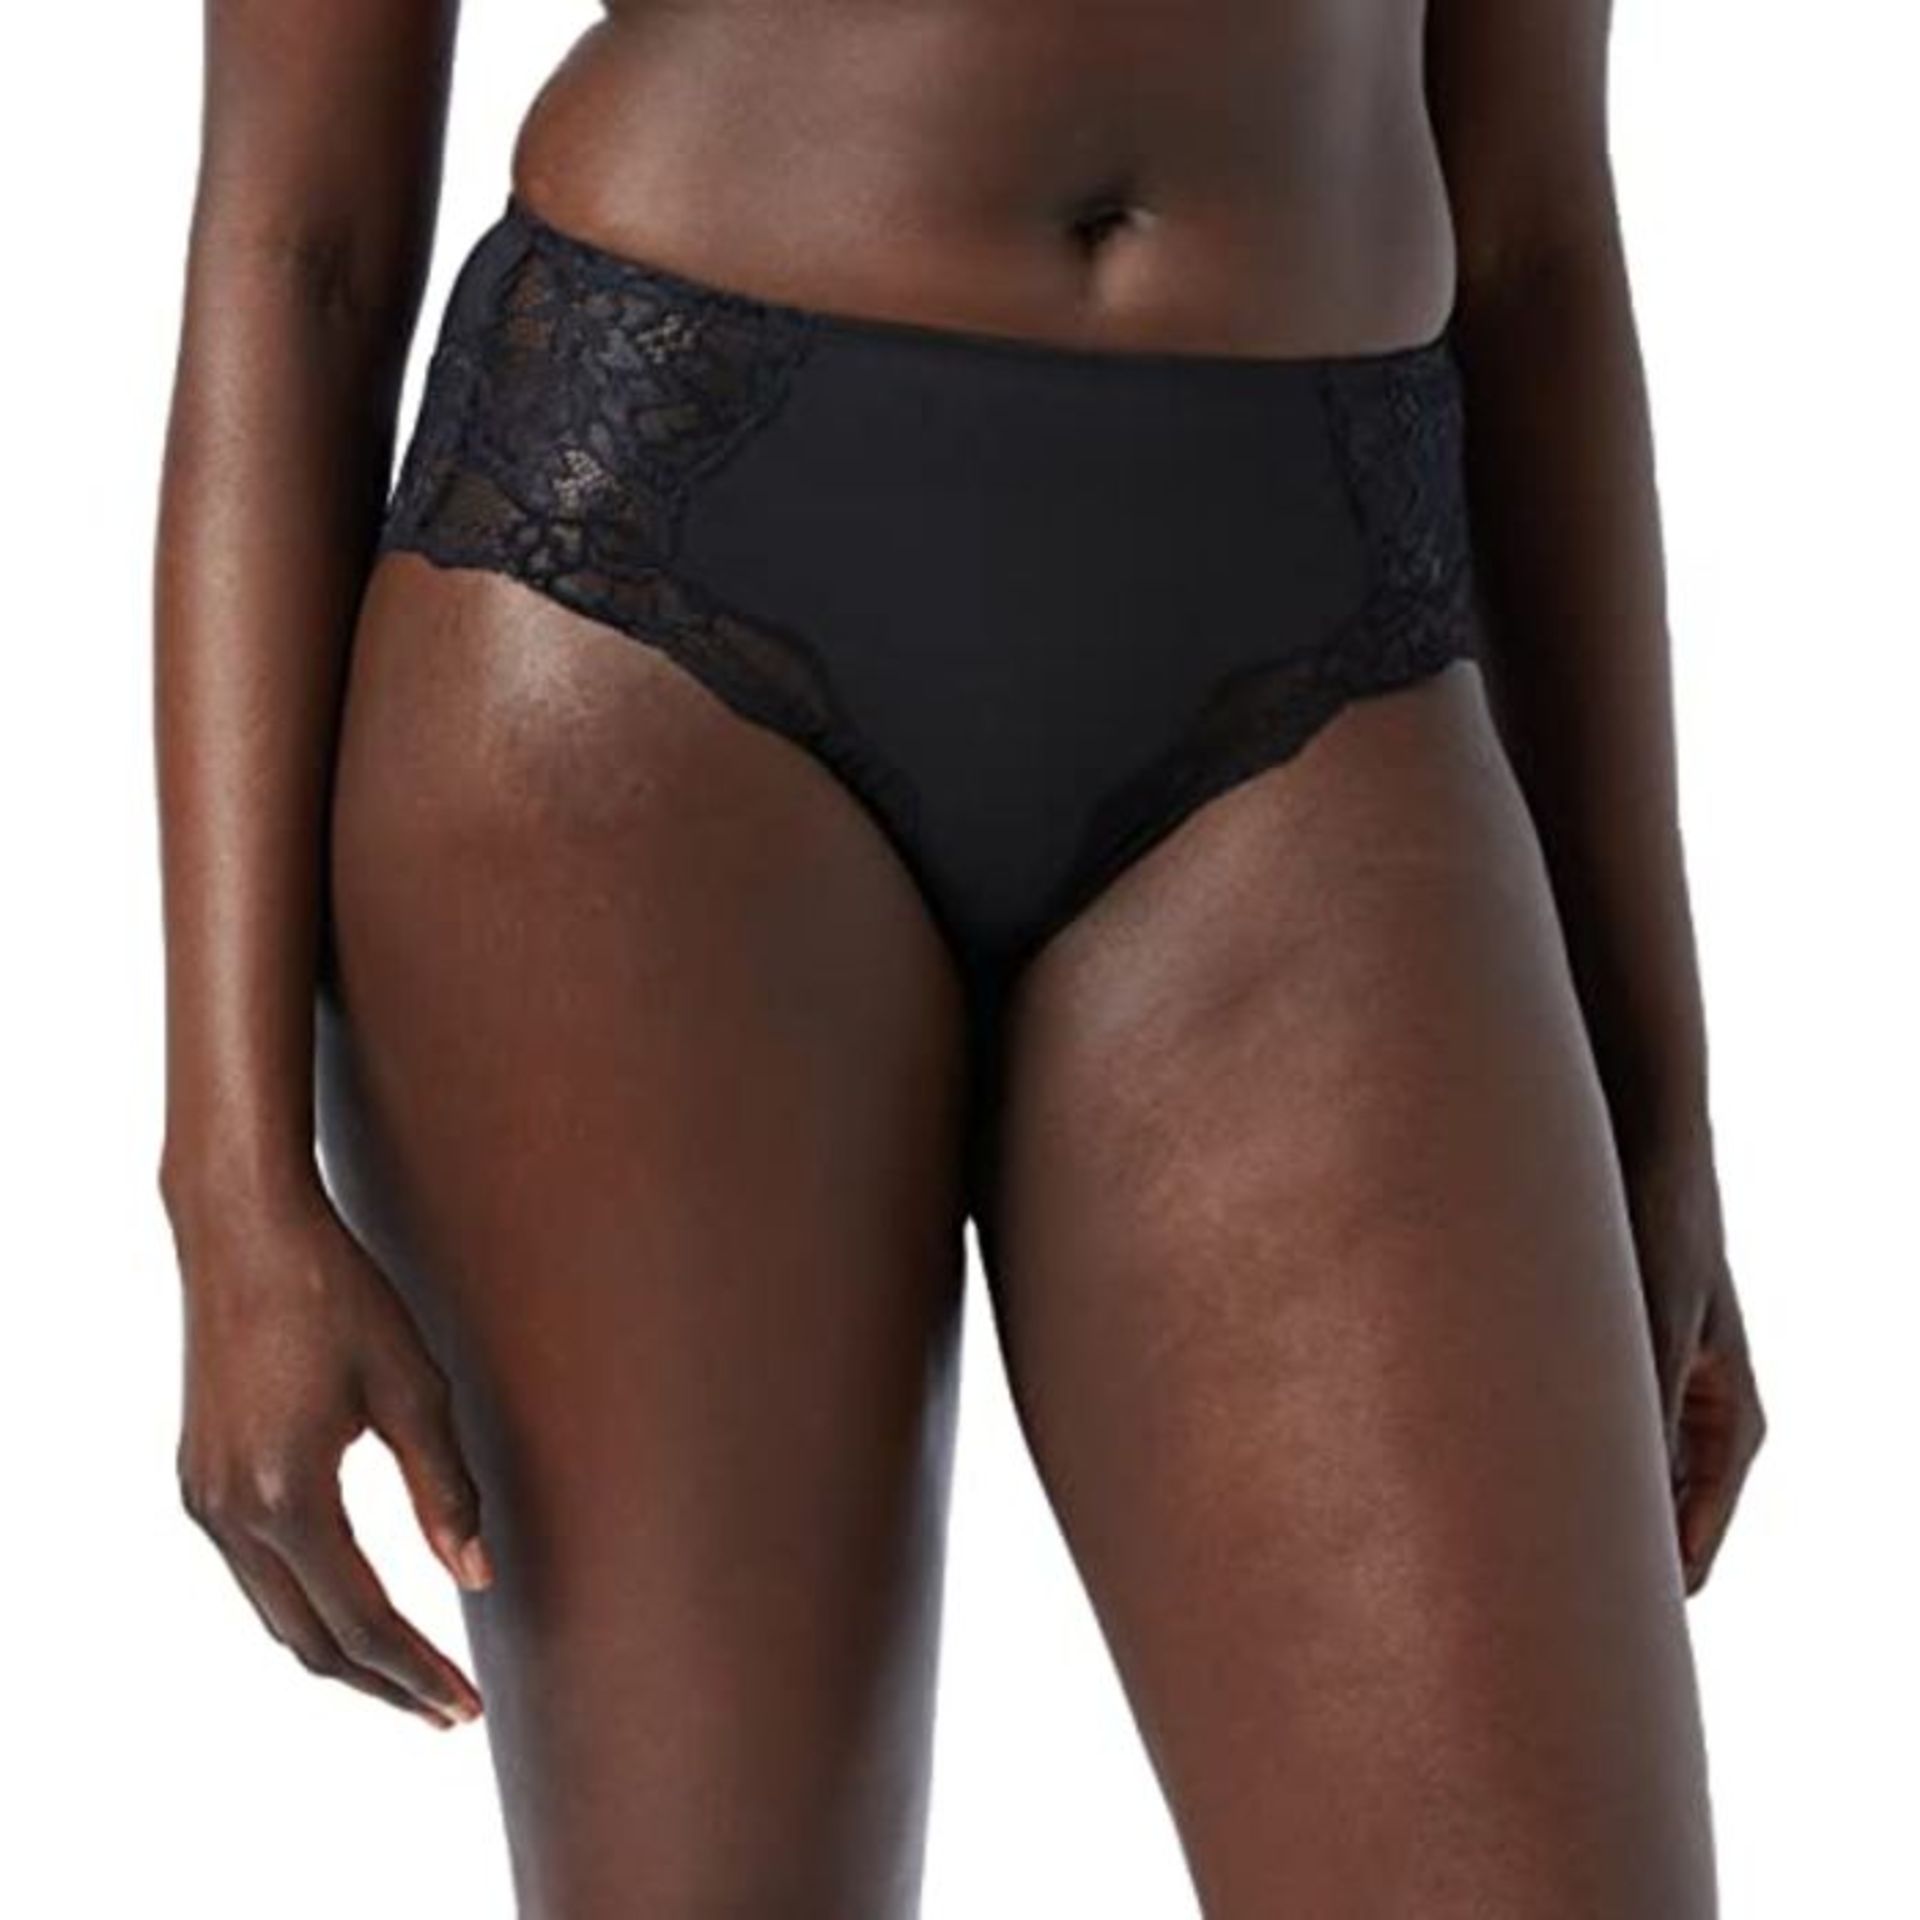 Triumph Women's Amourette Charm Maxi Underwear, Black (Black 0004), 14 UK